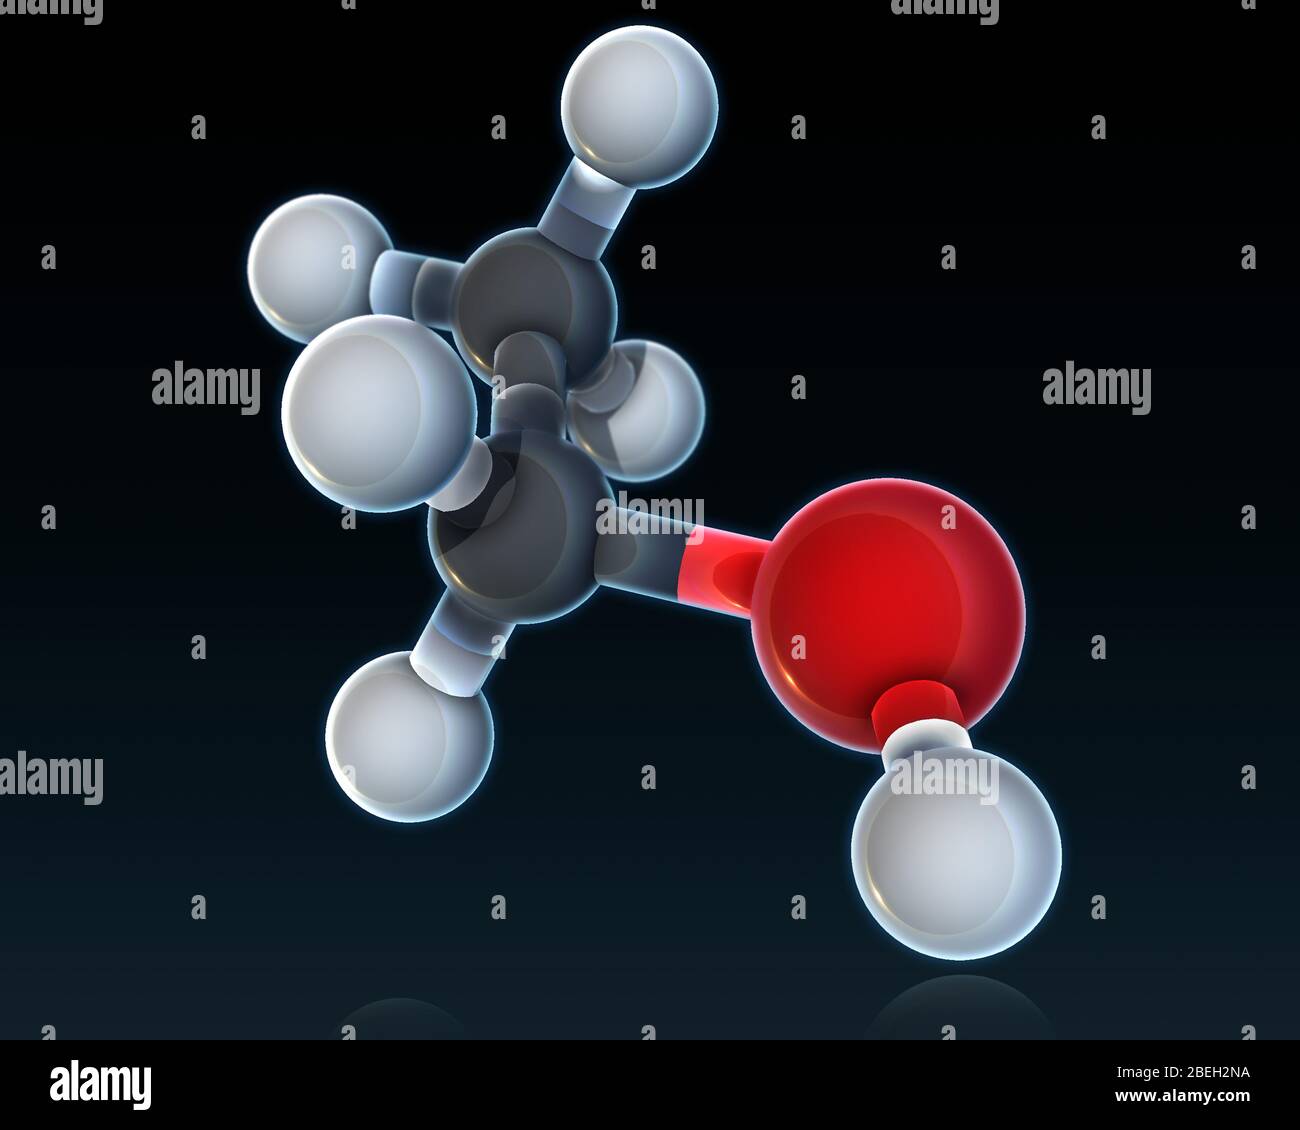 Ein molekulares Modell von Ethanol, einer flüchtigen, entzündlichen, farblosen Flüssigkeit, die in alkoholischen Getränken, Brennstoffen, Thermometern und Lösungsmitteln enthalten ist. Ethanol wird von vielen einfach nur als "Alkohol" bezeichnet und ist für die psychoaktiven Wirkungen der Vergiftung durch alkoholische Getränke verantwortlich. Atome sind hellgrau (Wasserstoff), dunkelgrau (Kohlenstoff) und rot (Sauerstoff) gefärbt. Stockfoto